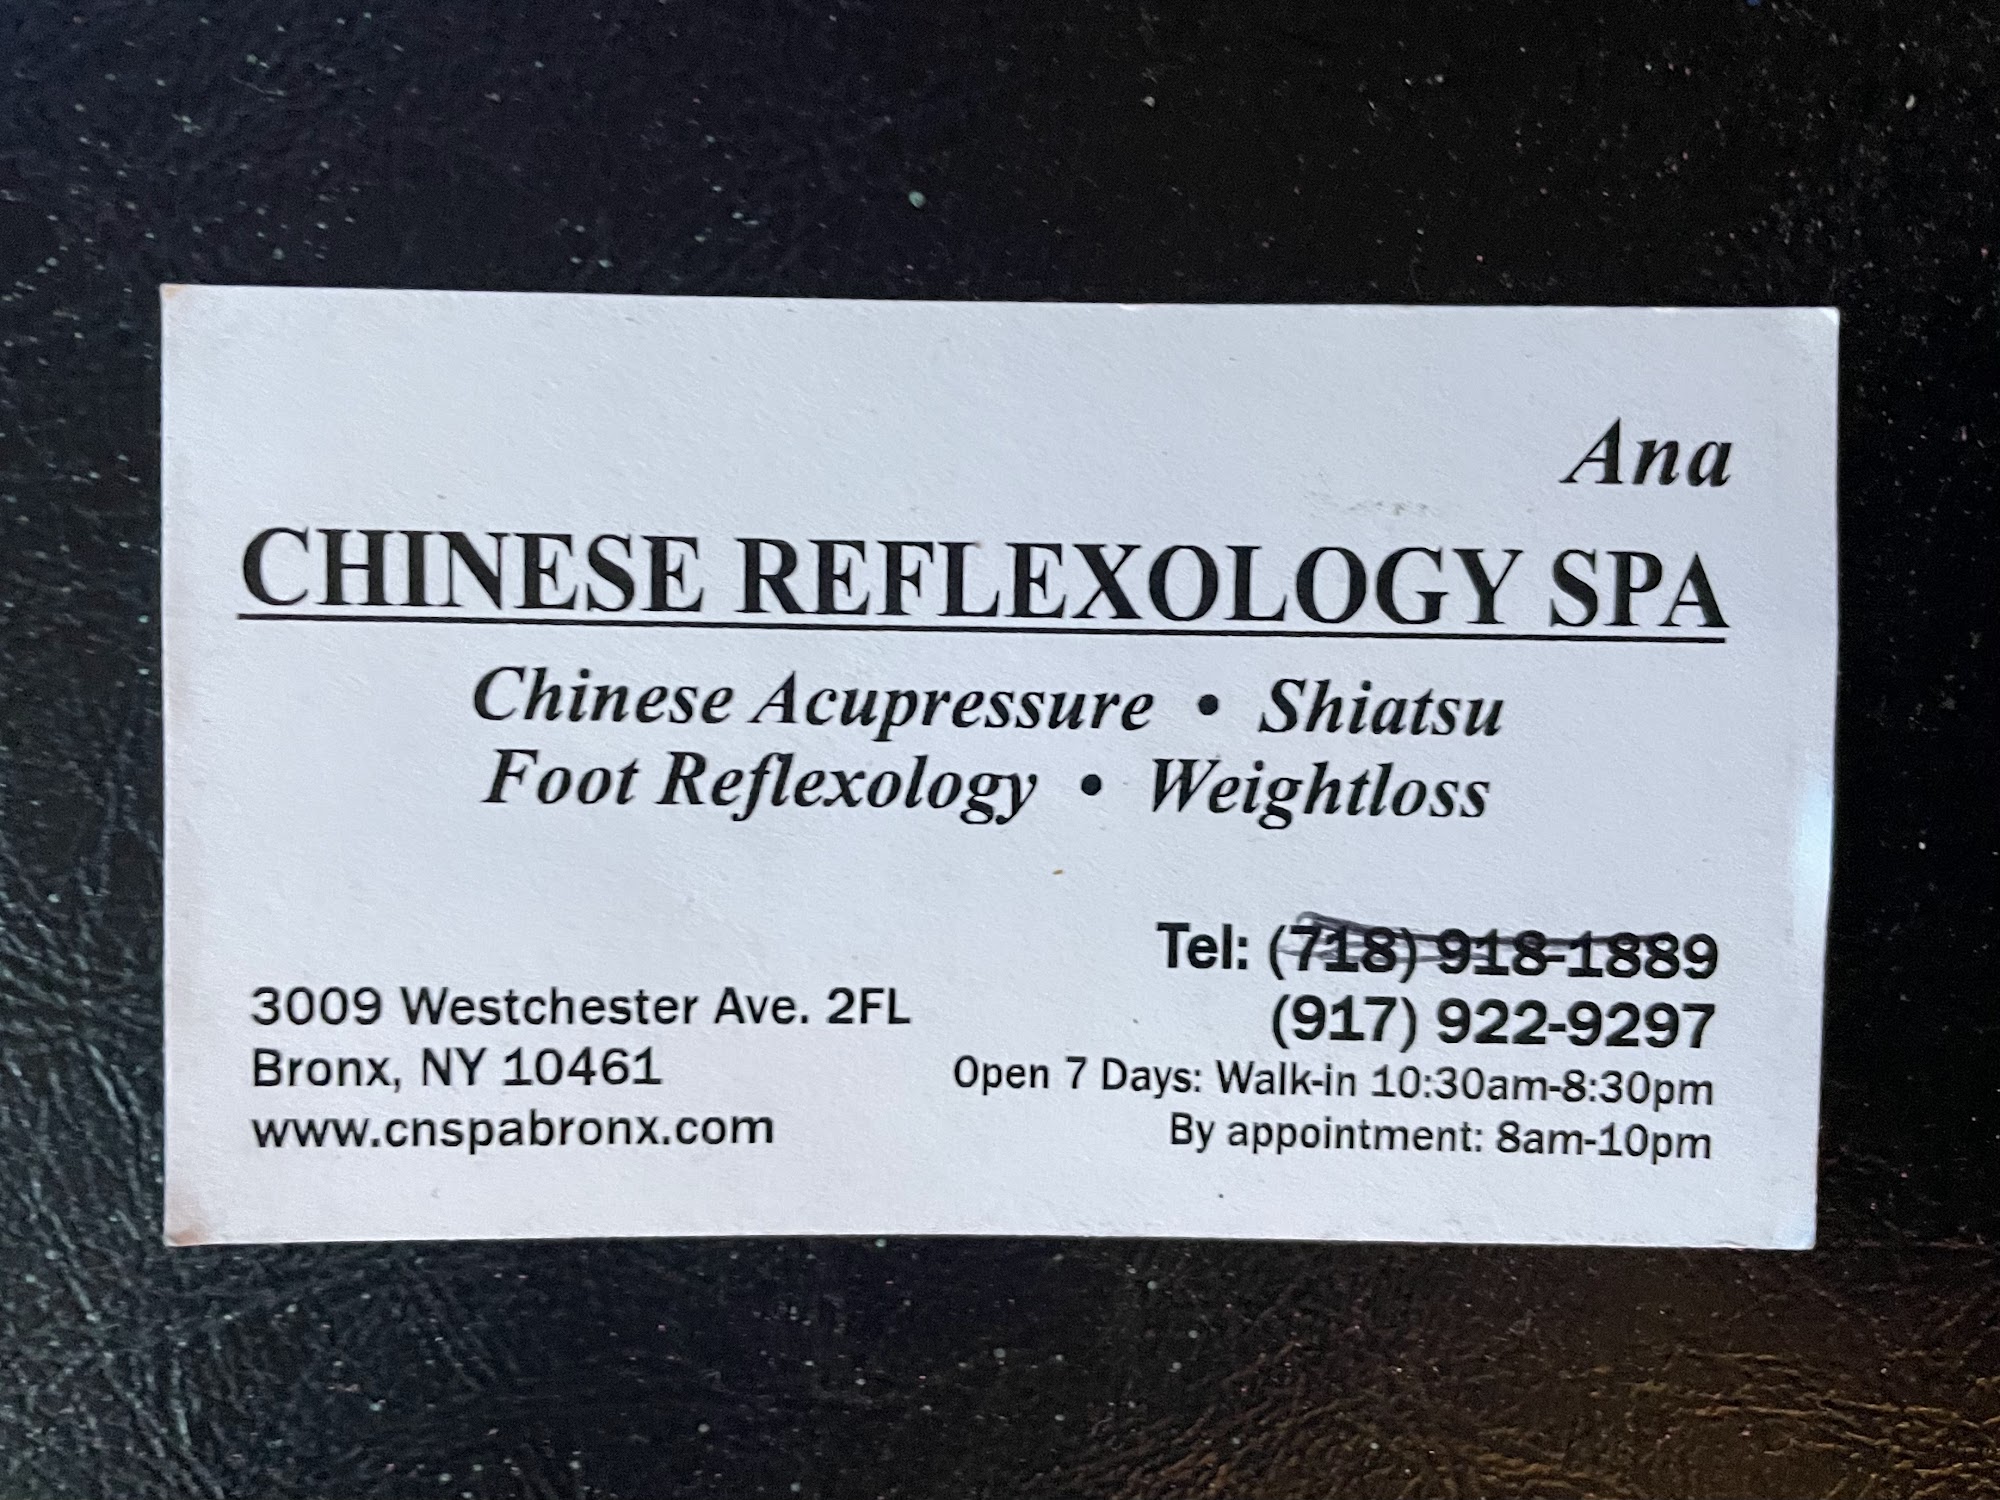 Chinese Reflexology Spa Inc